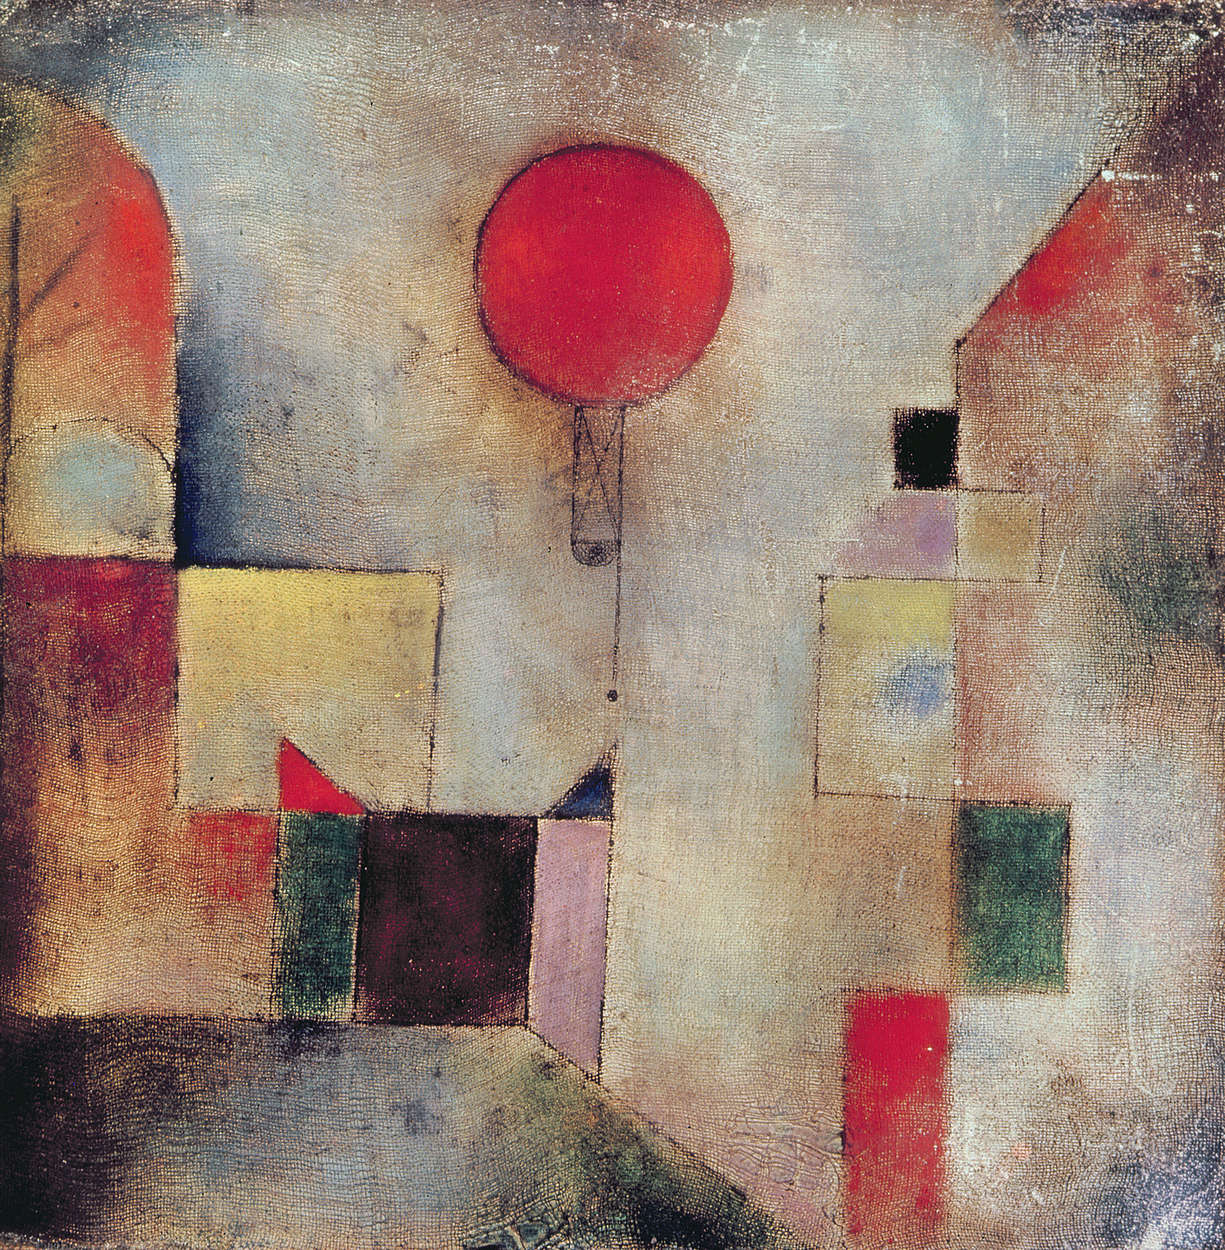             Rode Ballon" muurschildering van Paul Klee
        